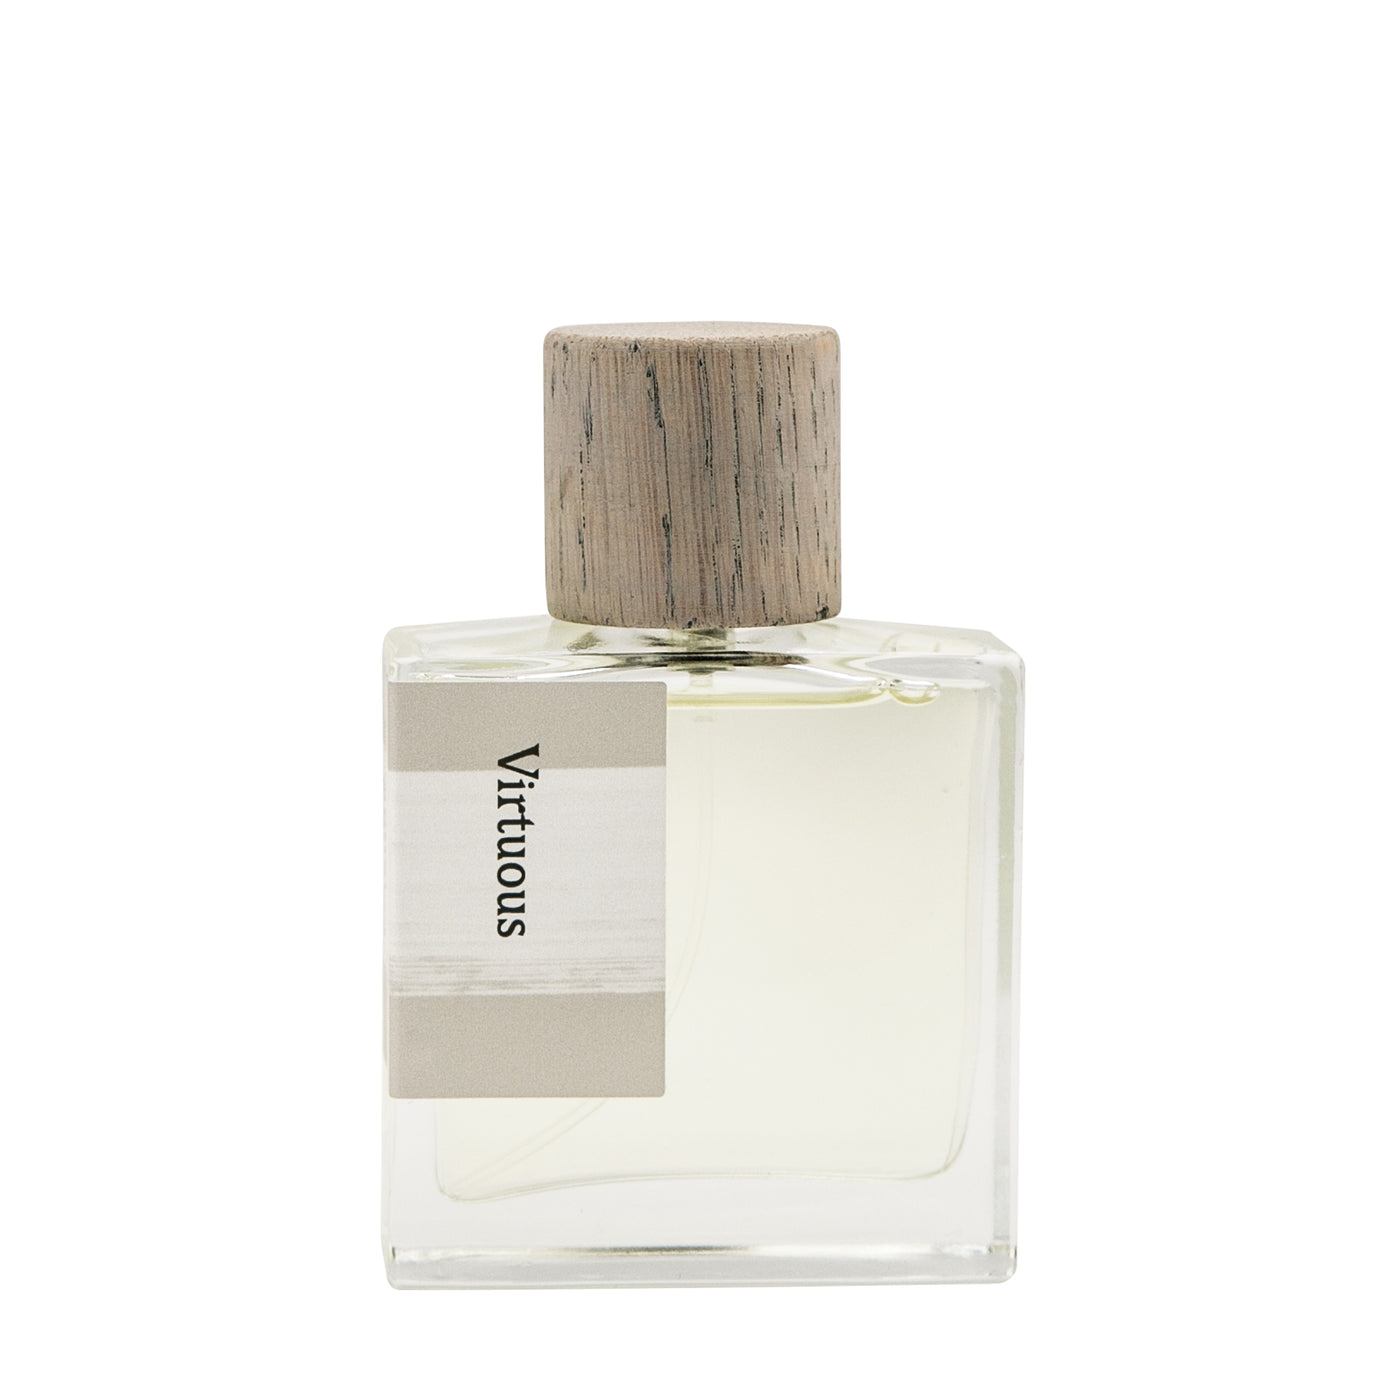 ILK Virtuous Extrait de Parfum 50ml